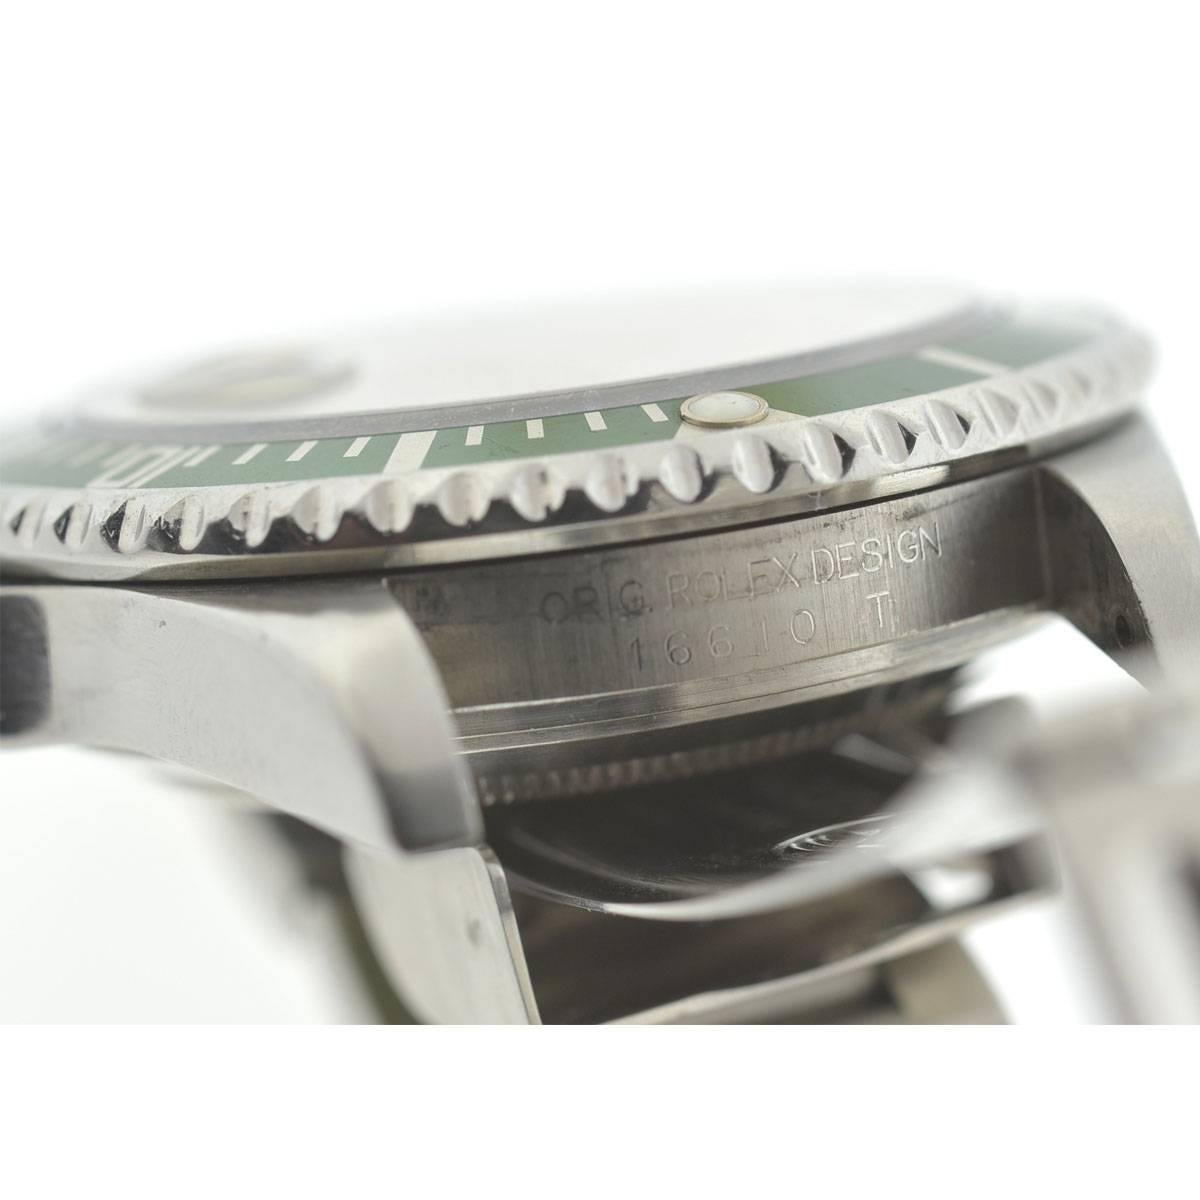 Rolex Stainless Steel Kermit Submariner Automatic Wristwatch Ref 16610LV 3